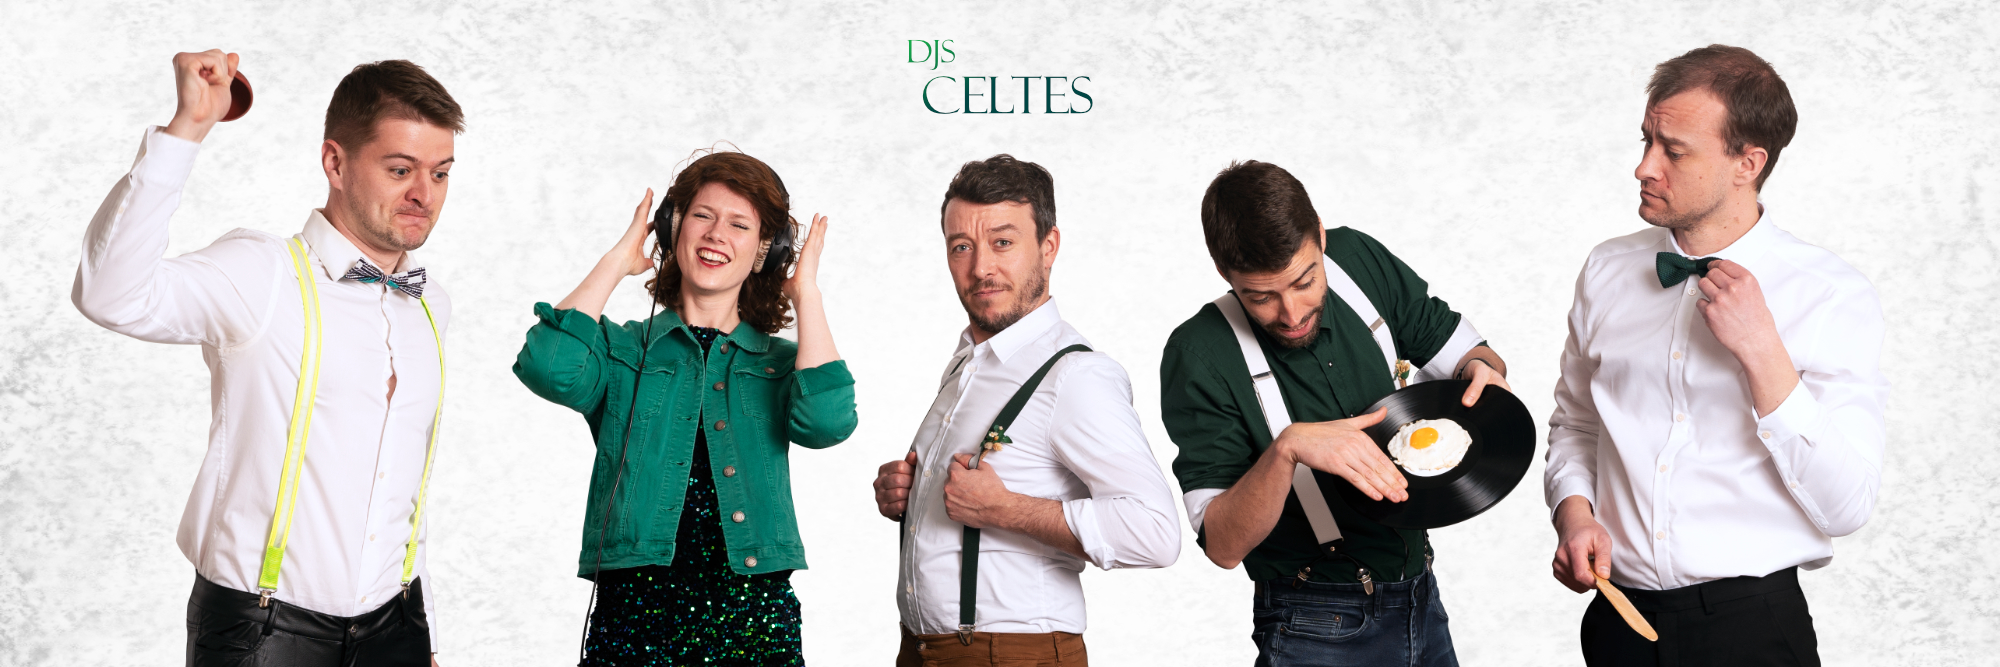 DJs Celtes, DJ Dj en représentation à Ille et Vilaine - photo de couverture